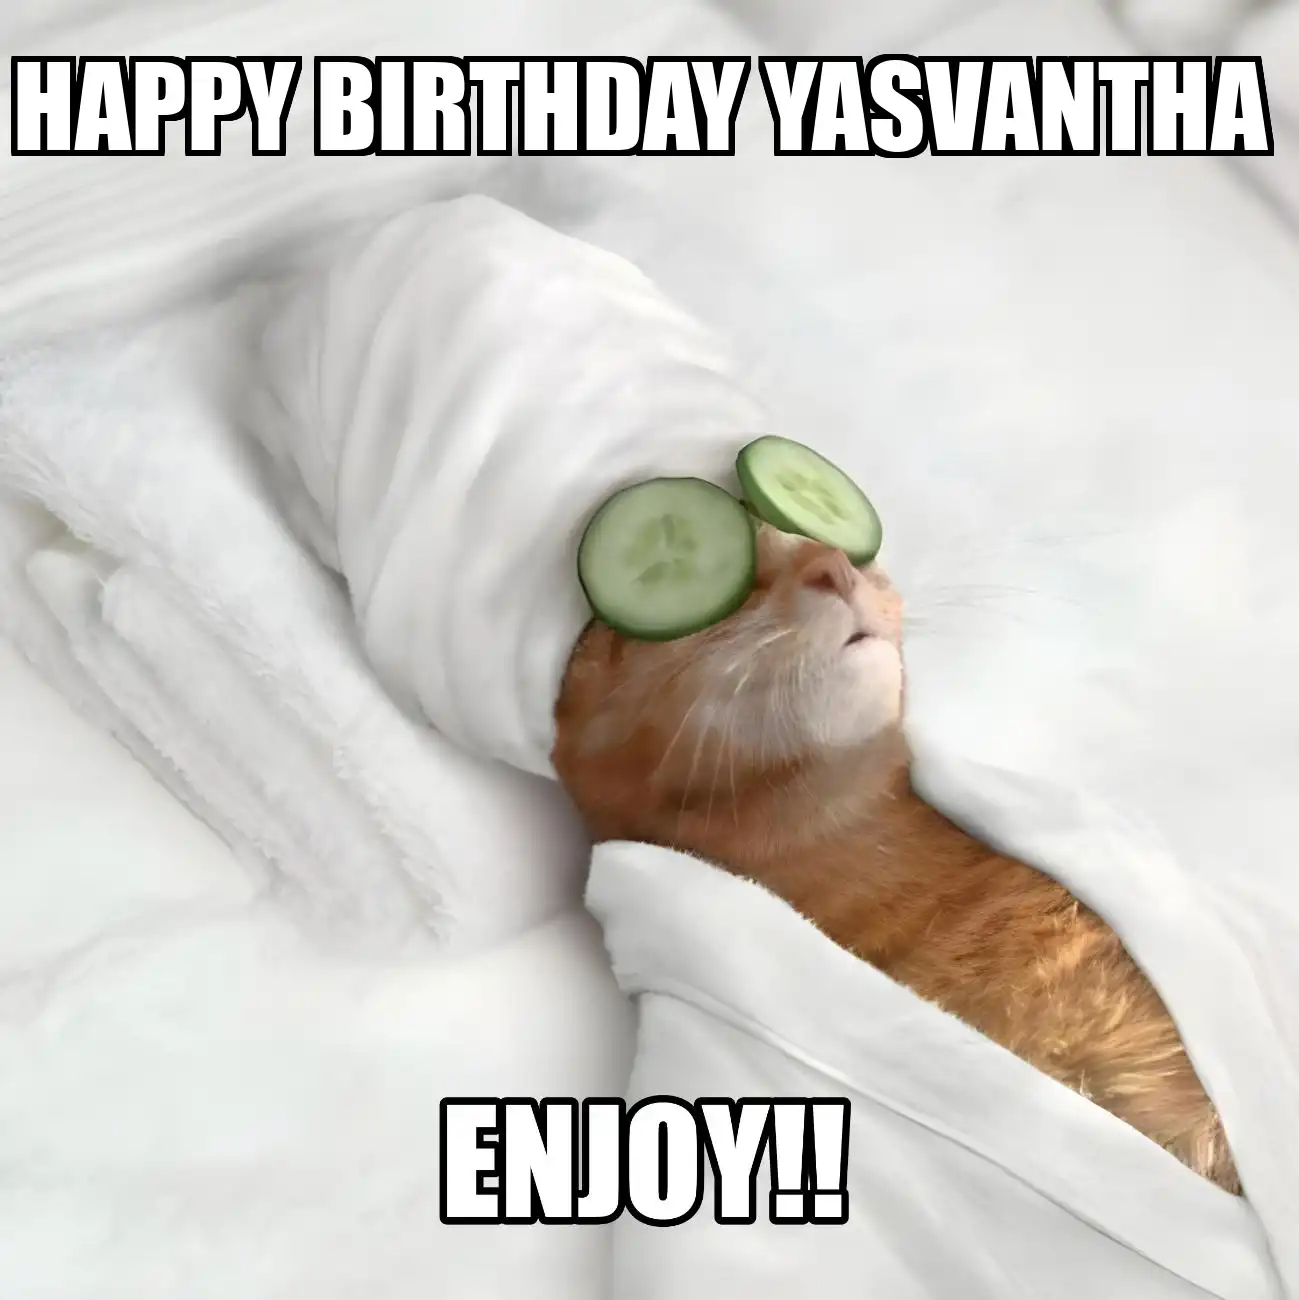 Happy Birthday Yasvantha Enjoy Cat Meme